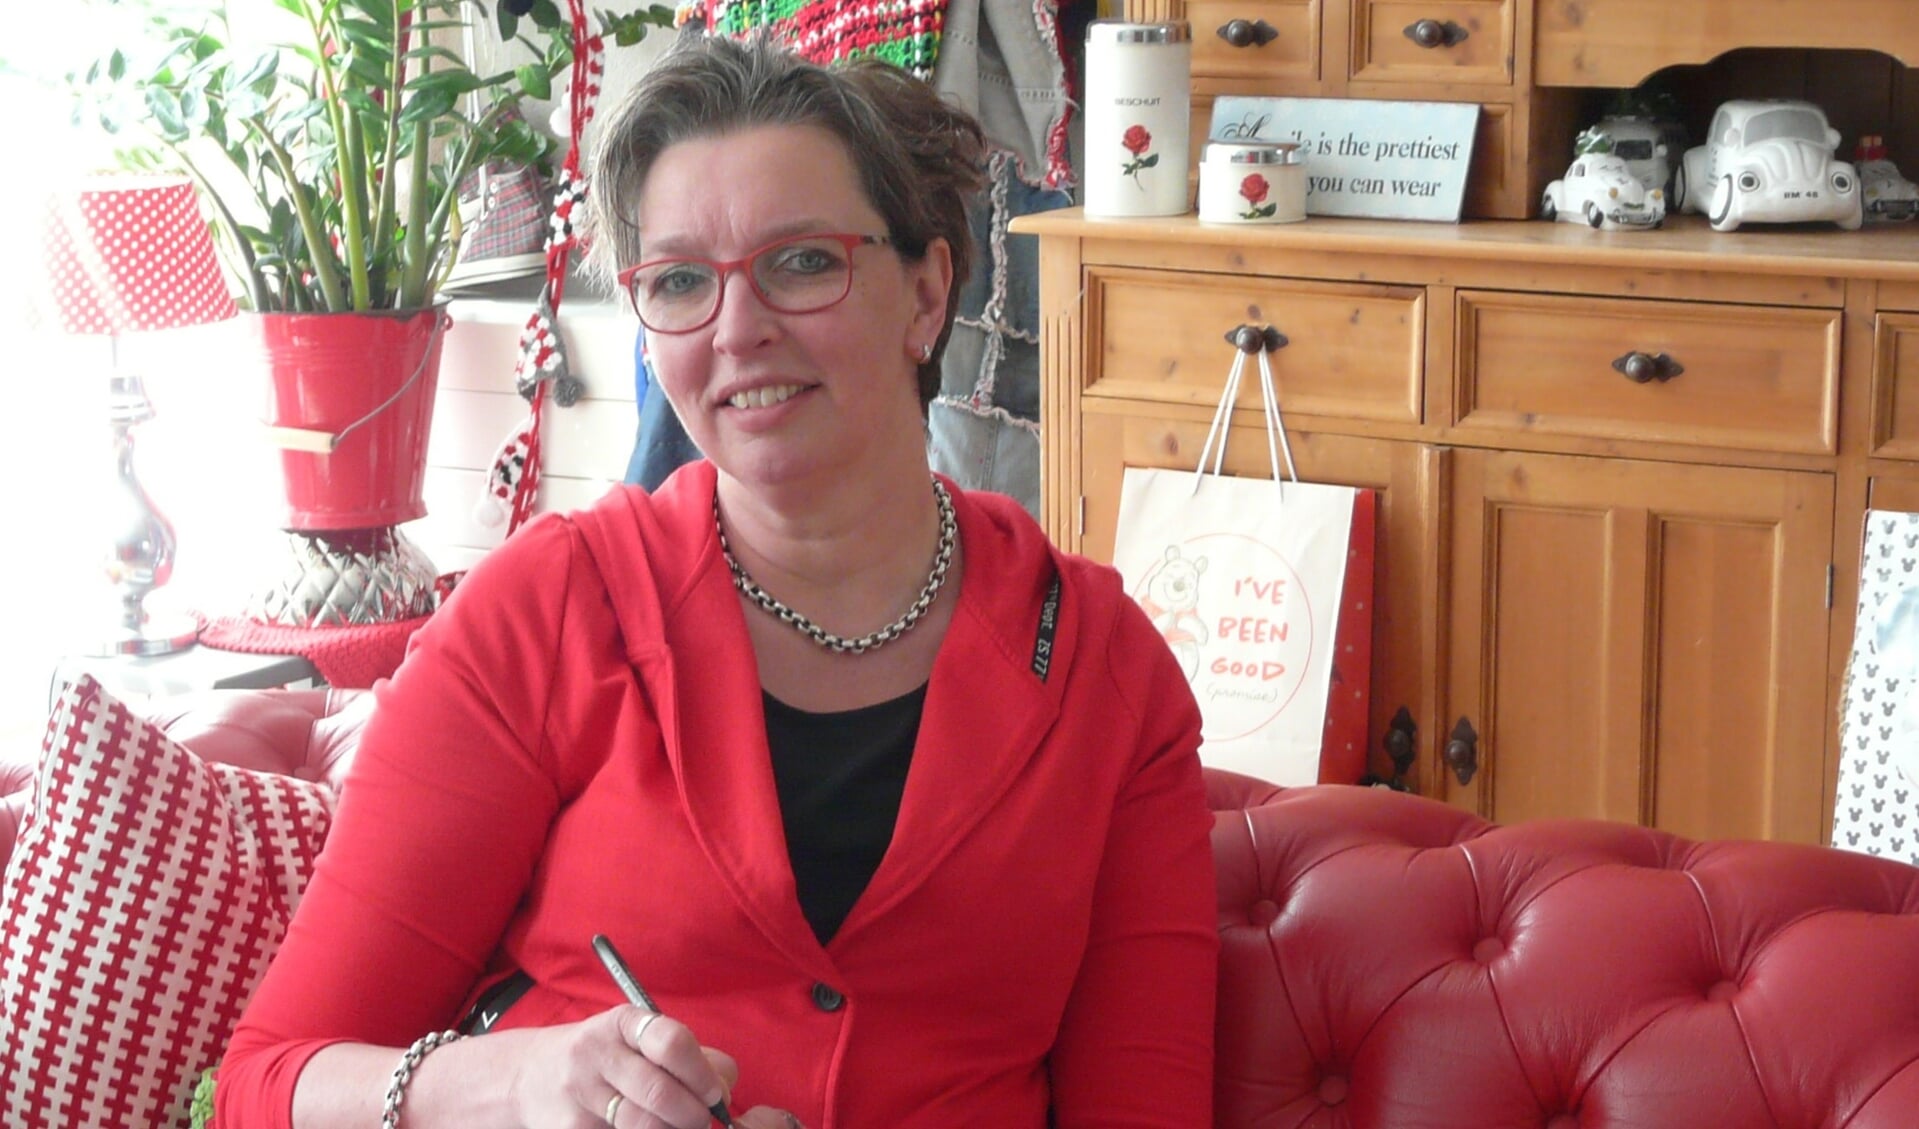  Annet van Ballegooijen ging bij het schrijven van 'Mammoedig' uit van haar eigen ervaringen.  